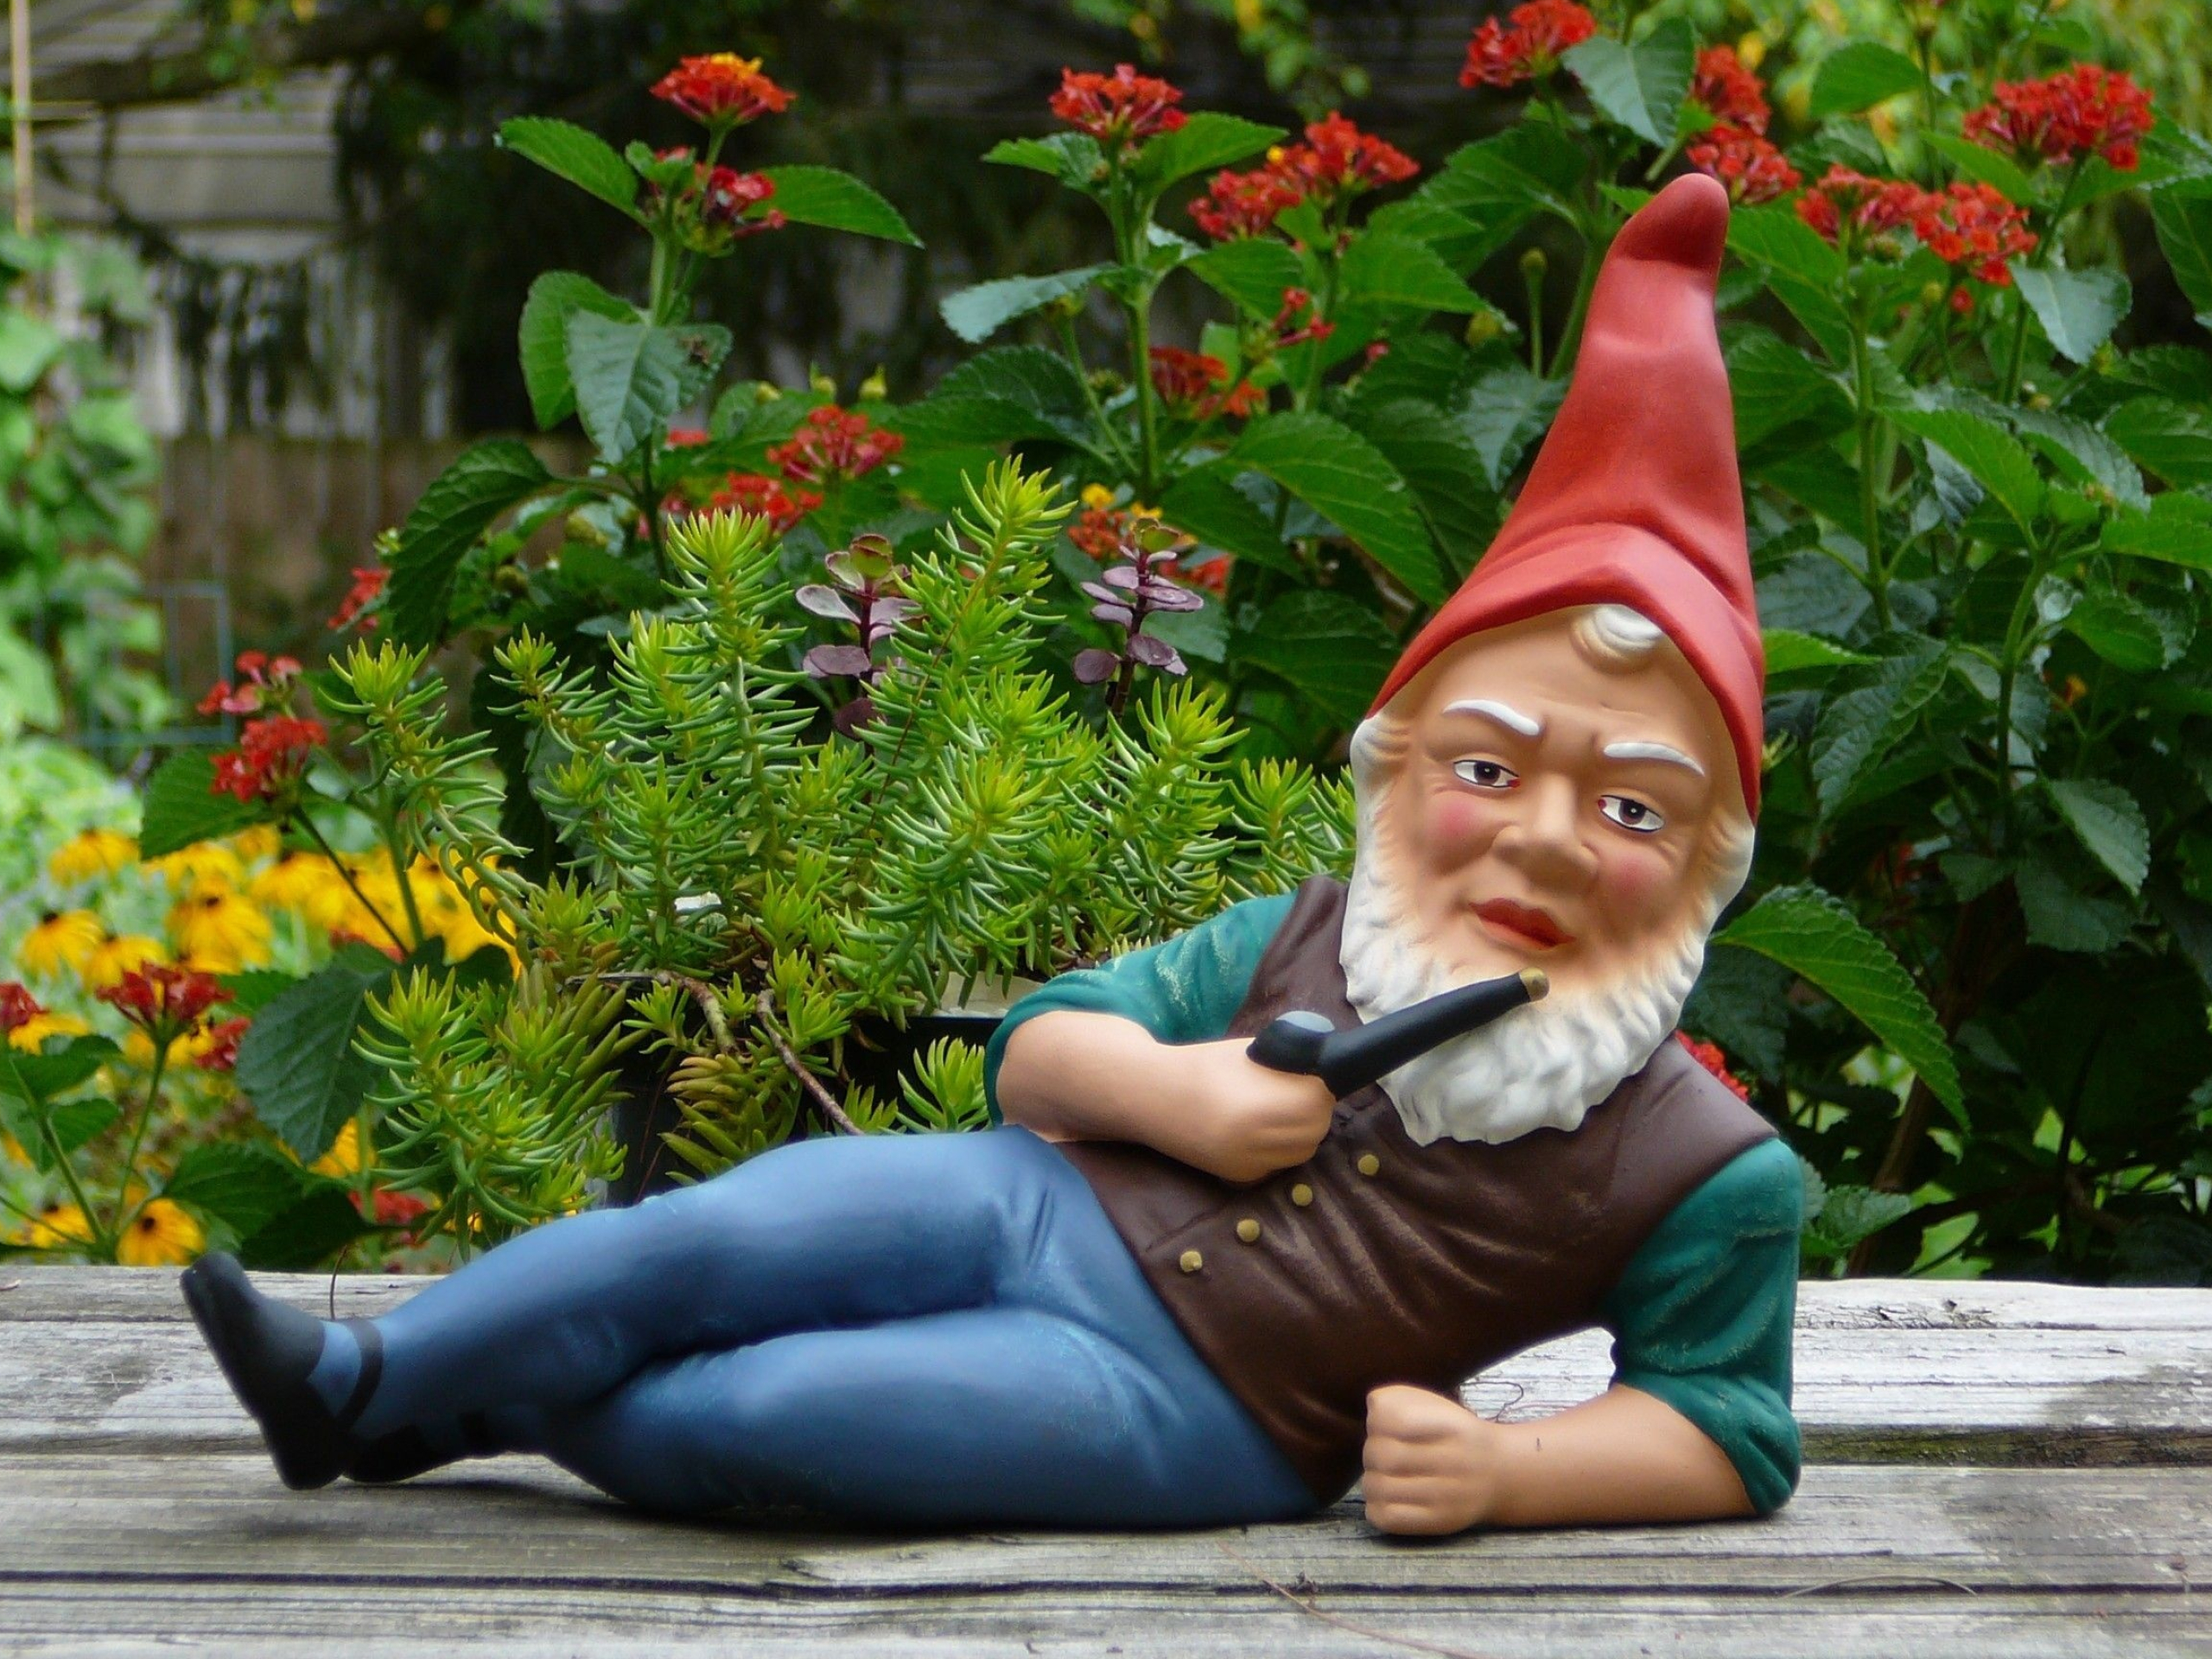 Garden gnome wallpapers, Outdoor dcor, Cute garden gnomes, Whimsical statues, 2560x1920 HD Desktop